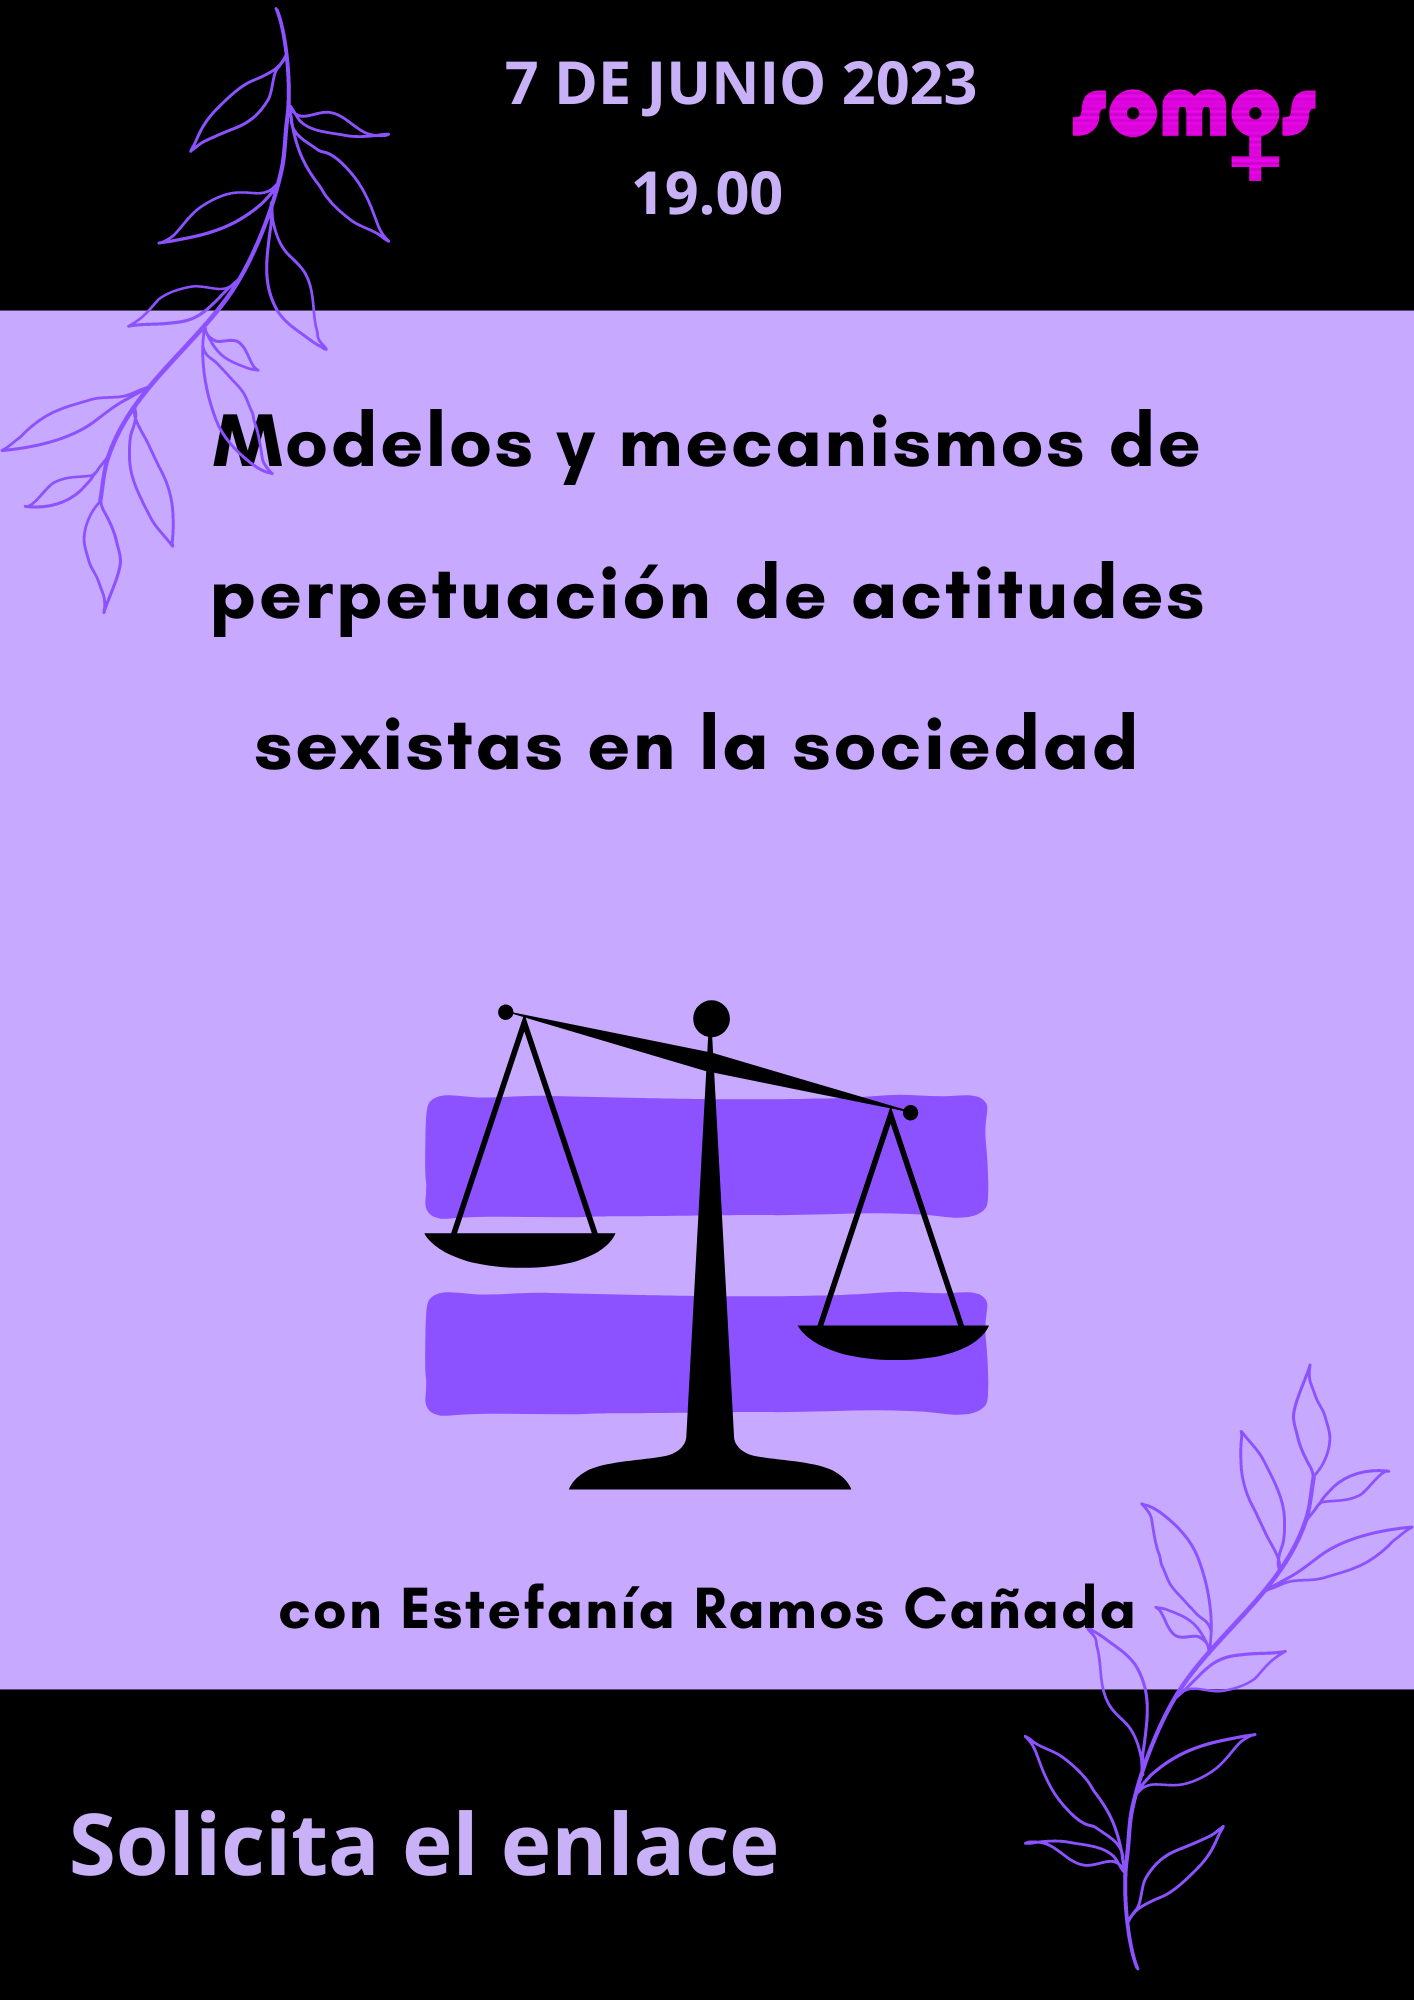 "Modelos y mecanismos de perpetuación de actitudes sexistas en la sociedad" con Estefanía ramos Cañada